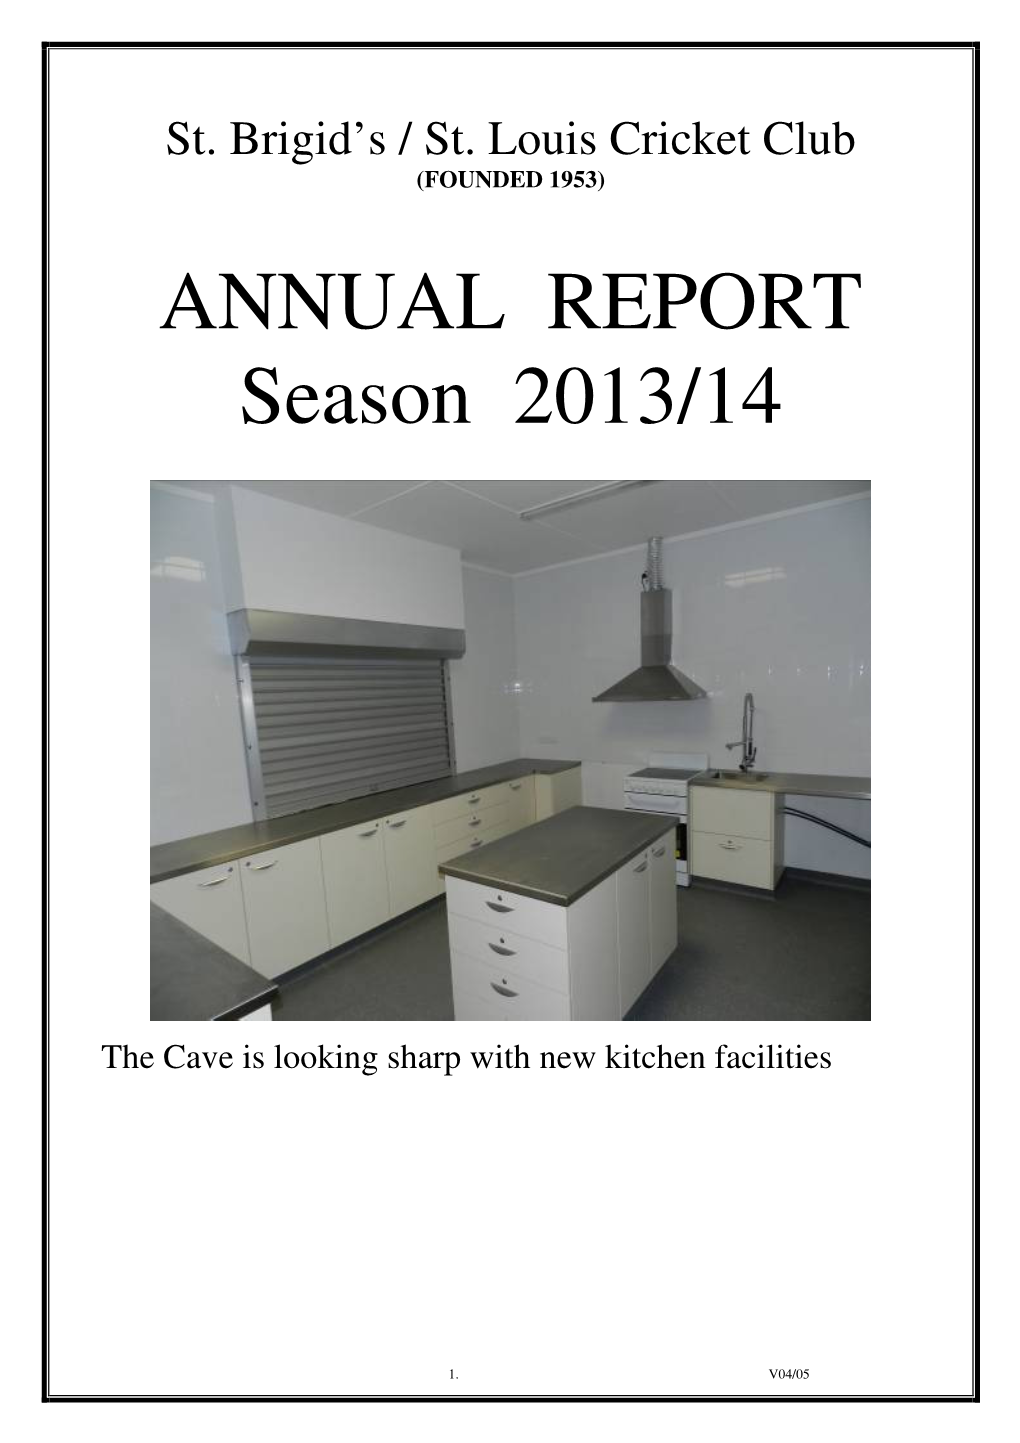 ANNUAL REPORT Season 2013/14